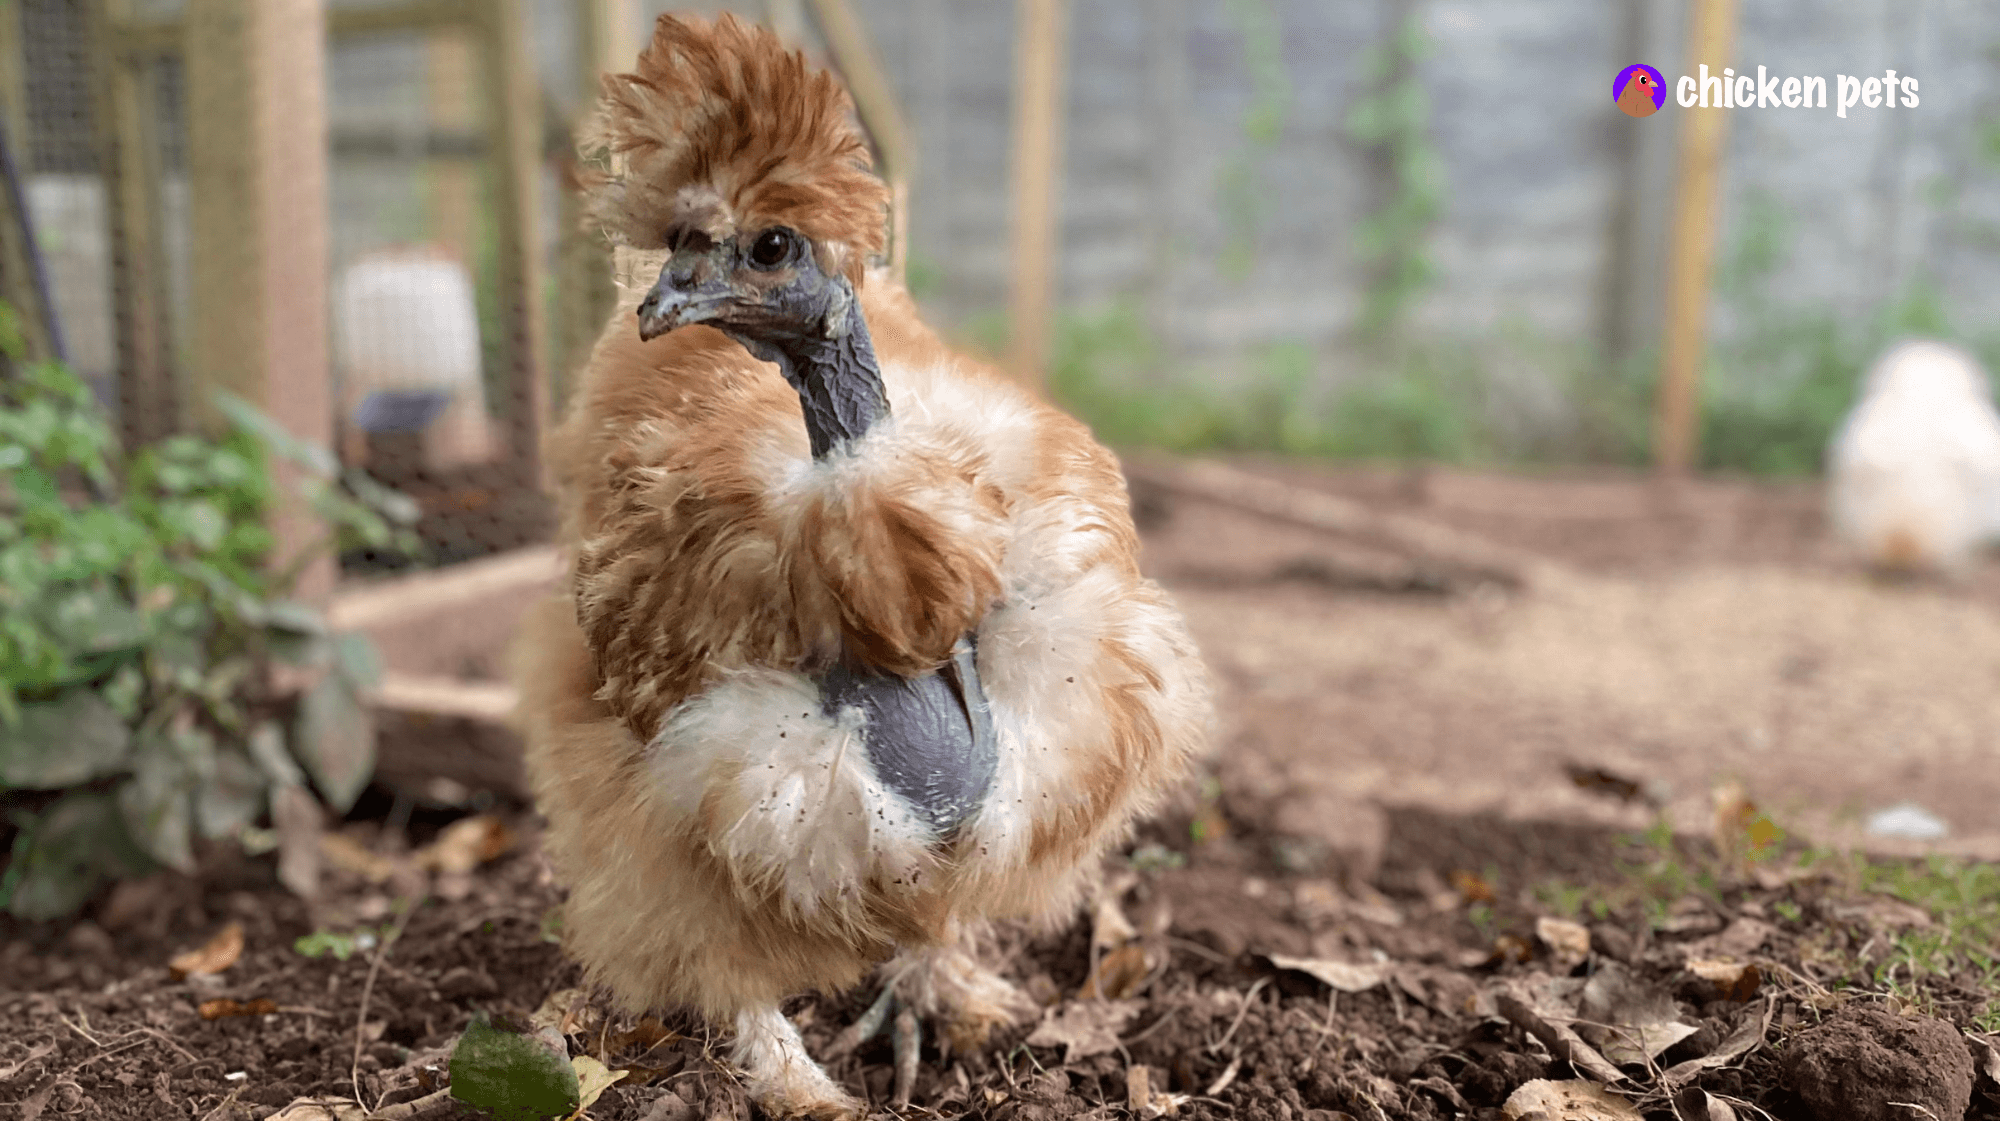 showgirl chicken